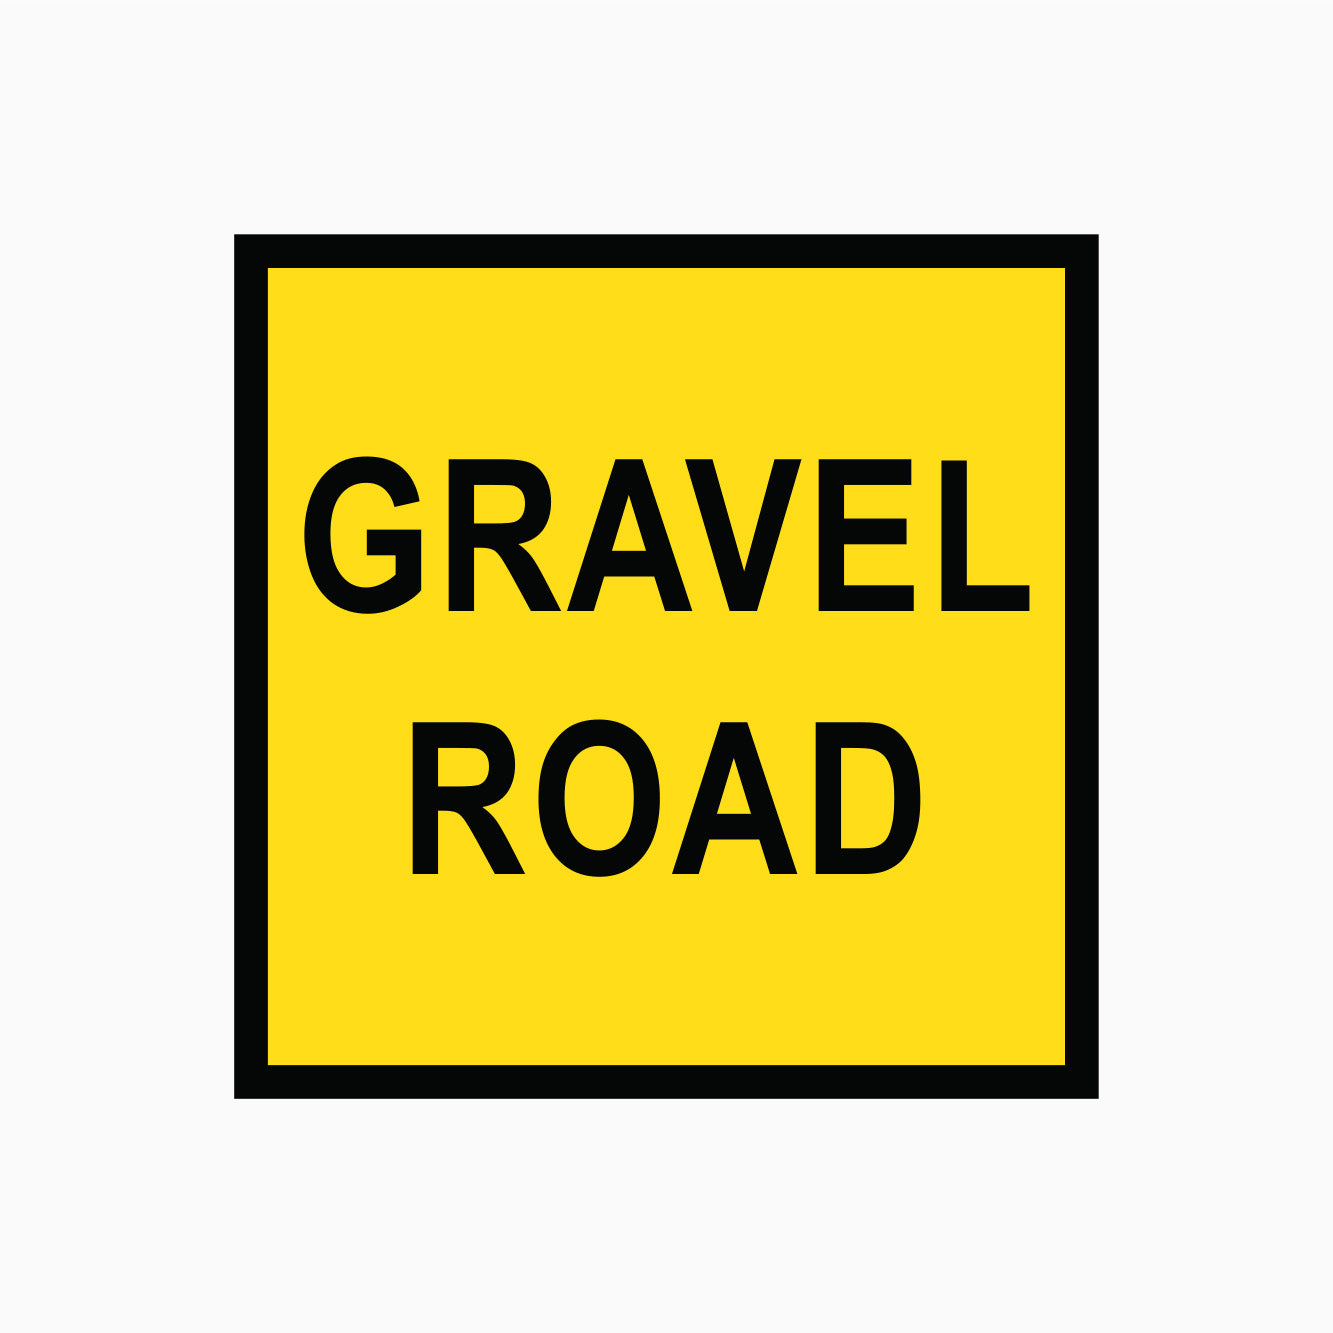 Gravel road sign by Australian Standards - GRAVEL ROAD SIGN